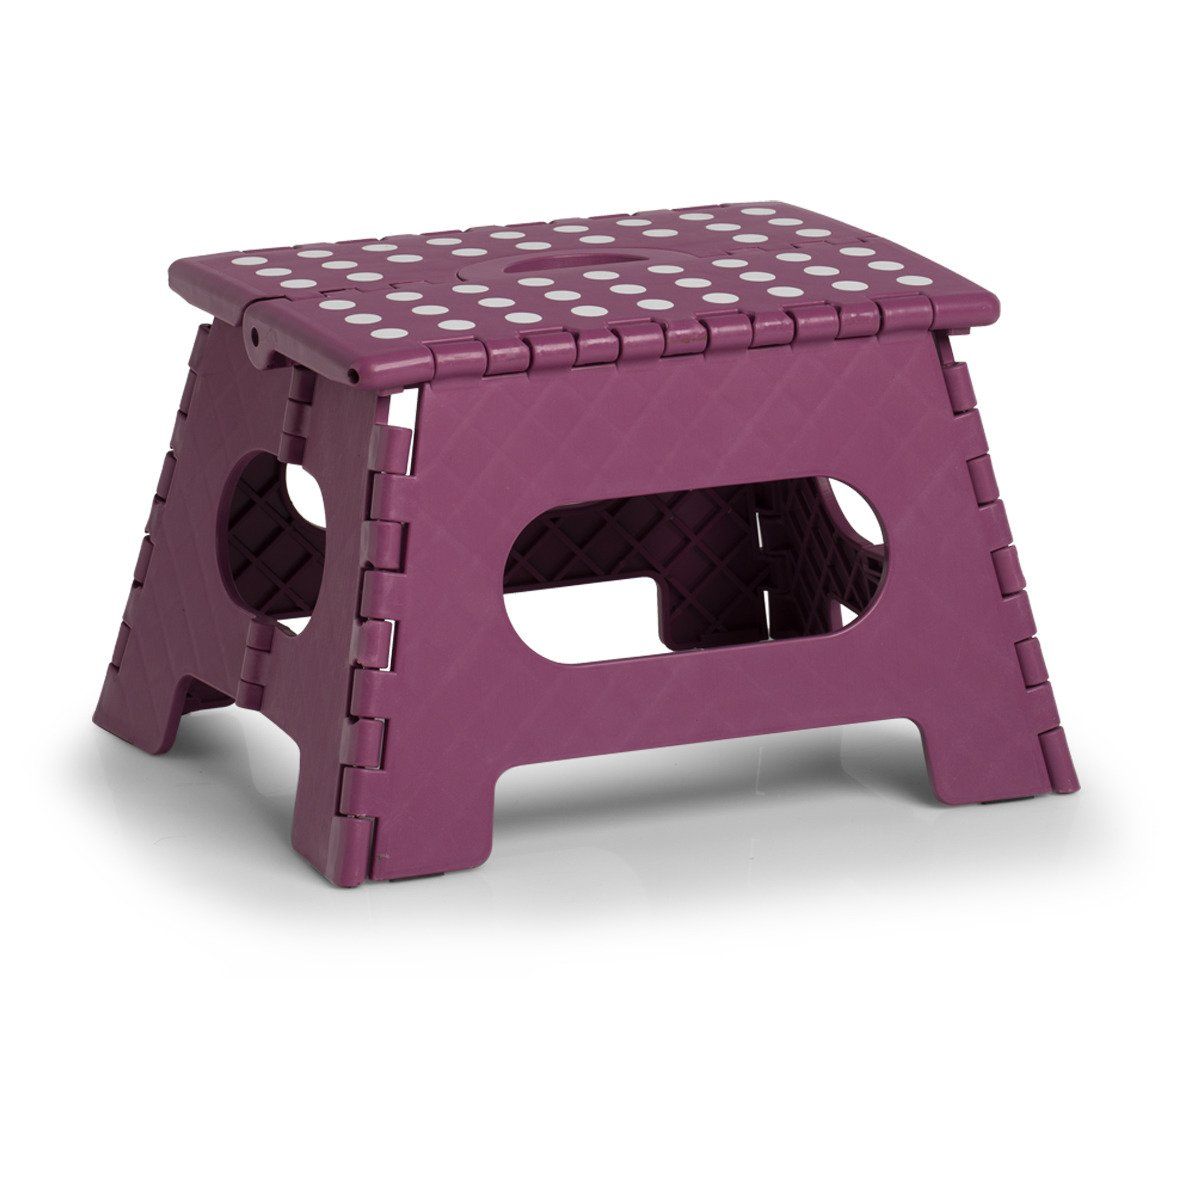 Protiskluzová skládací stolička, fialová, 35 x 28 x 22 cm, ZELLER - EMAKO.CZ s.r.o.